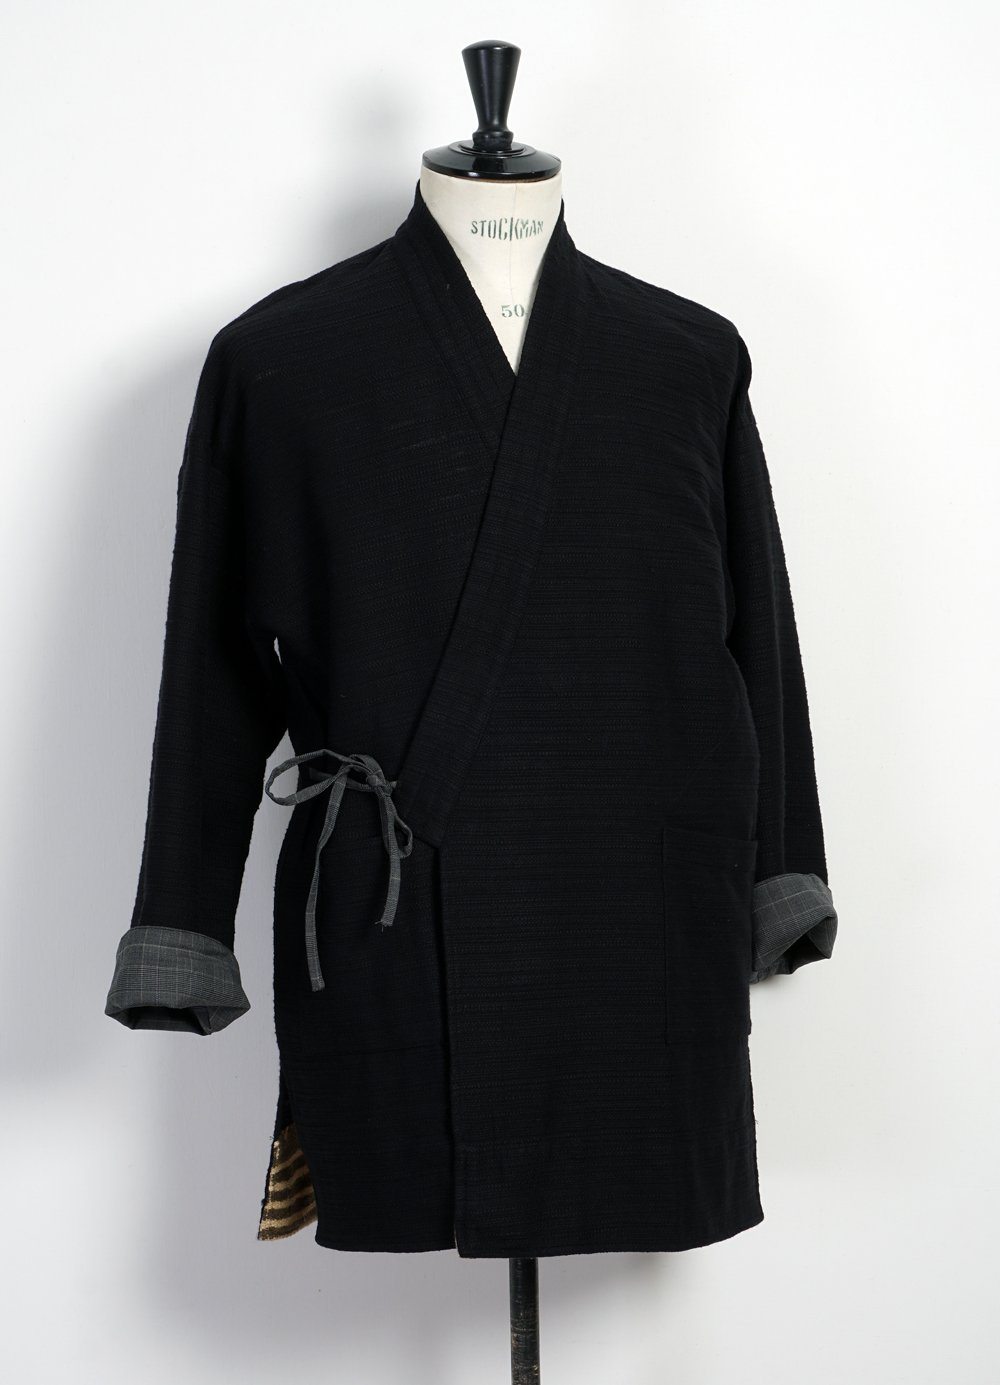 KAI D - JAPANESE FARMER COAT | Novel Slub Yarn | Black - HANSEN Garments